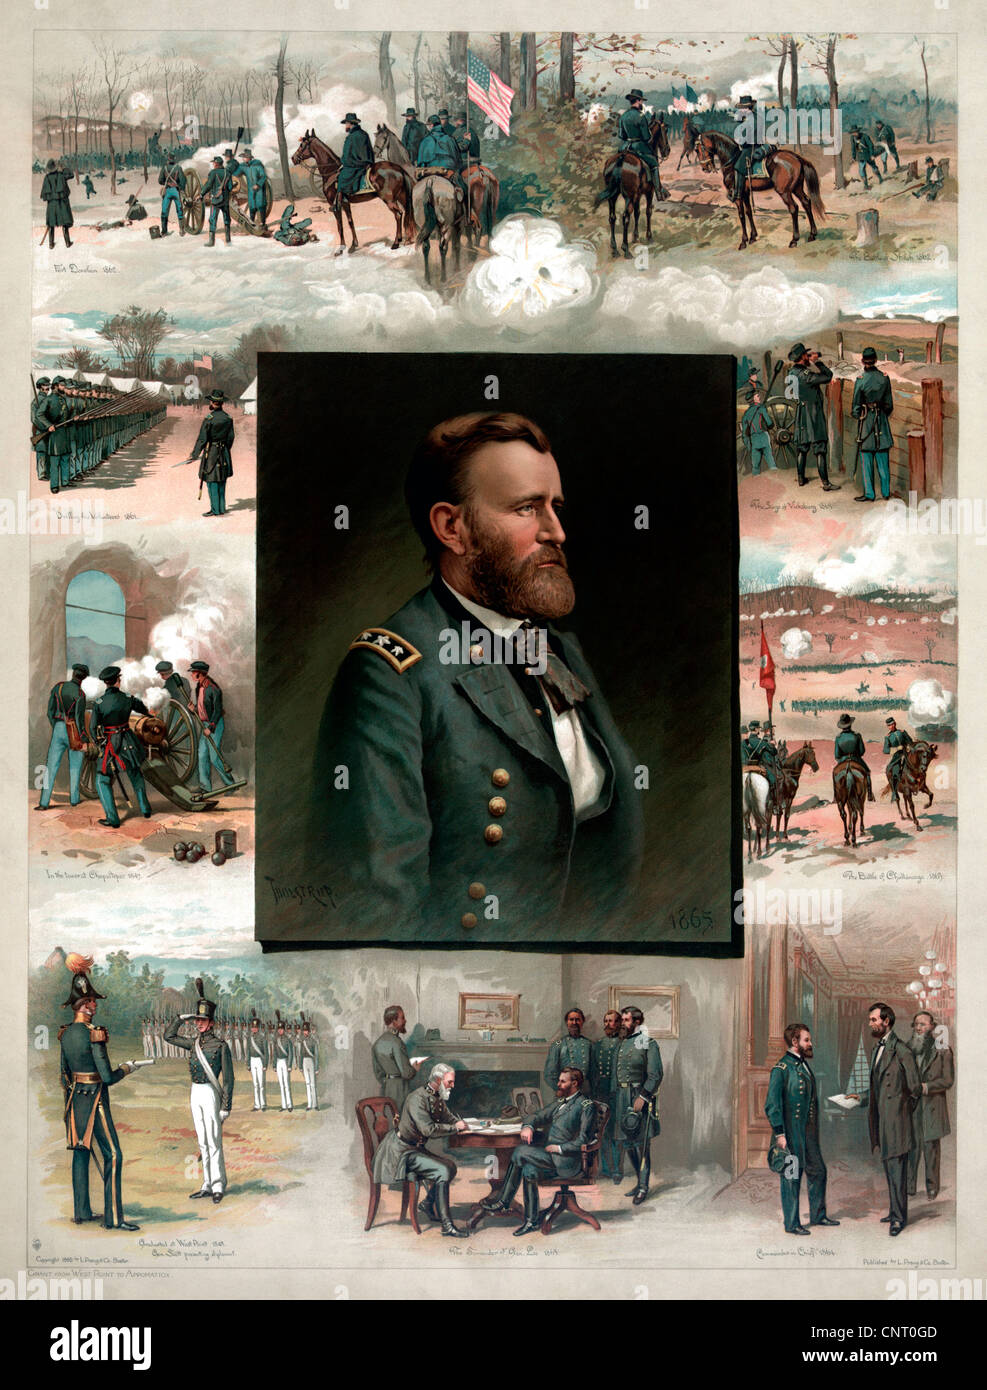 L'histoire de l'Amérique restaurés numériquement imprimer de Ulysses S. Grant de West Point d'Appomattox. Banque D'Images